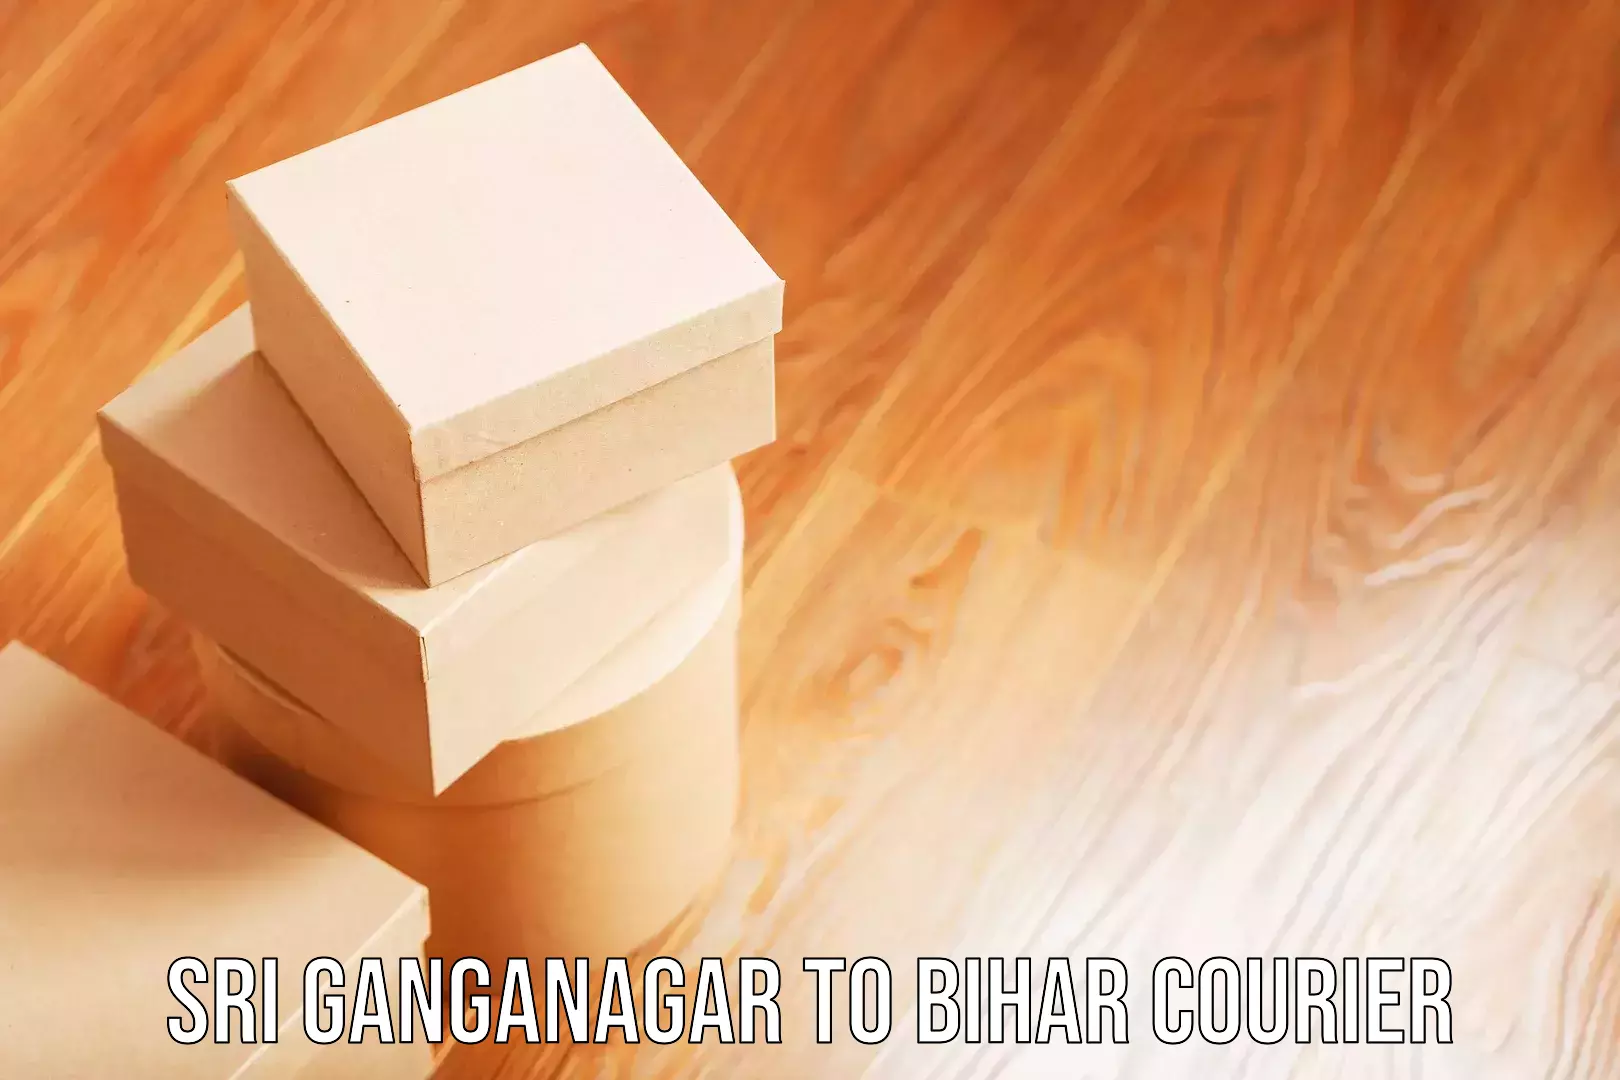 Baggage courier calculator Sri Ganganagar to Bihar